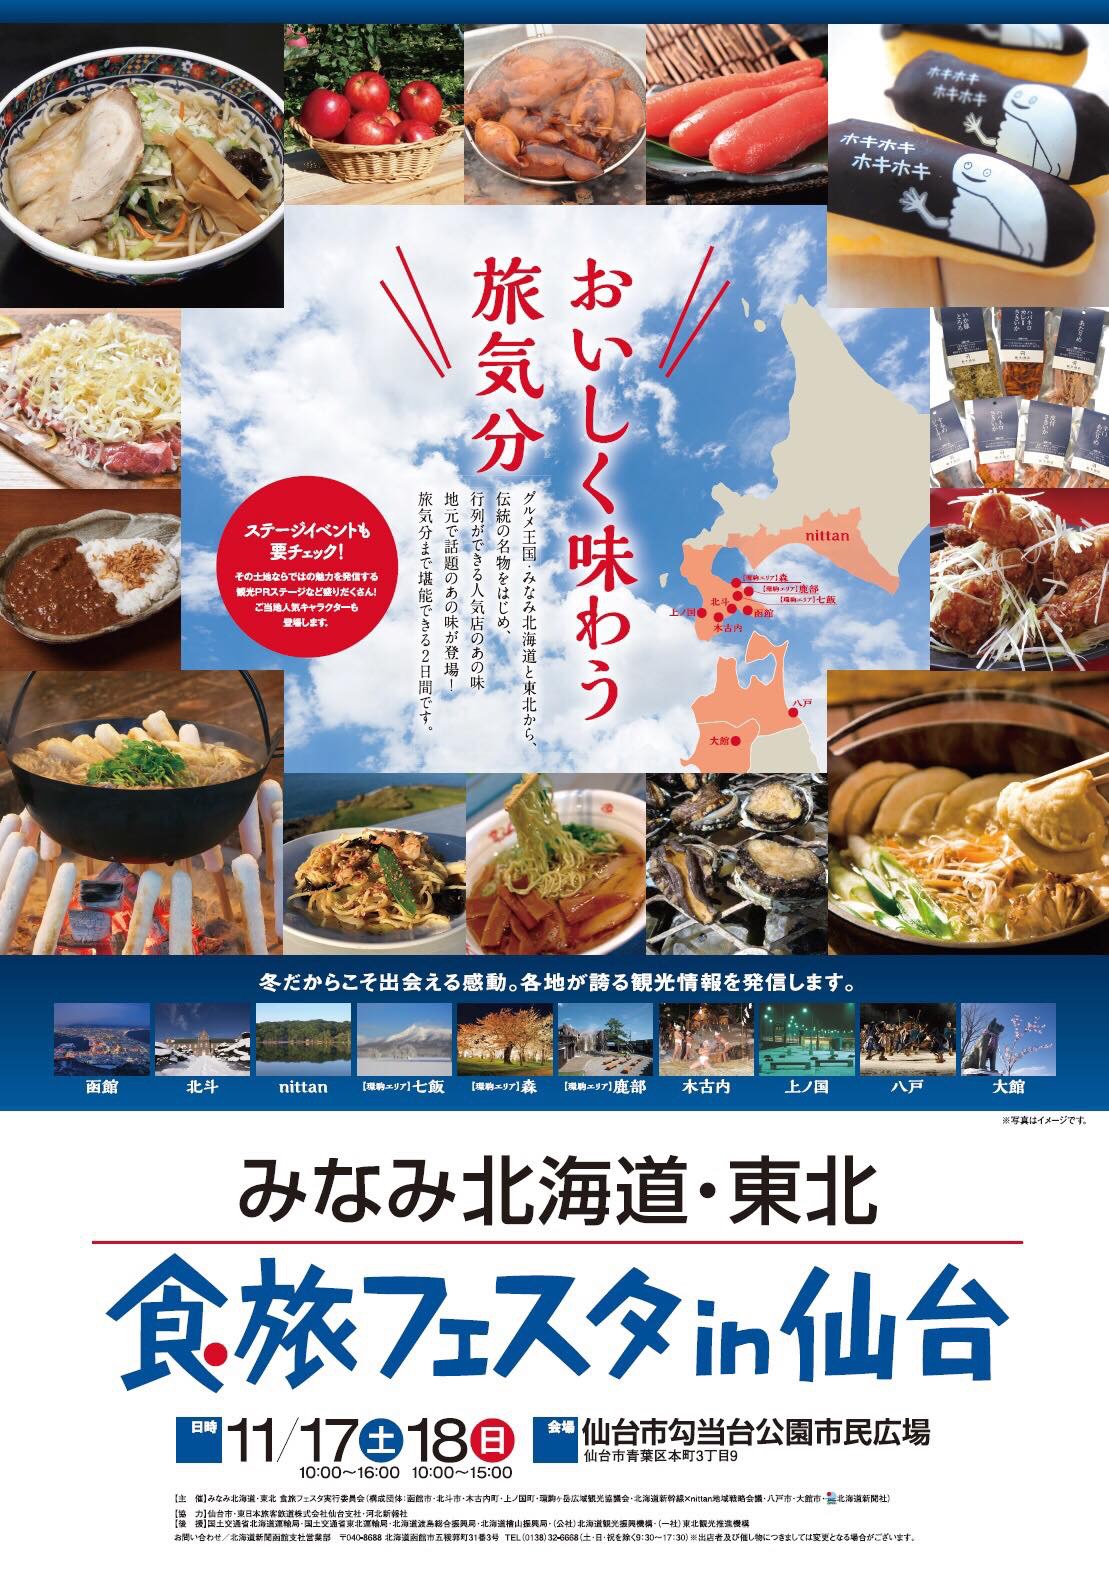 おいしく味わう旅気分 みなみ北海道・北東北 食旅フェスタin仙台2018